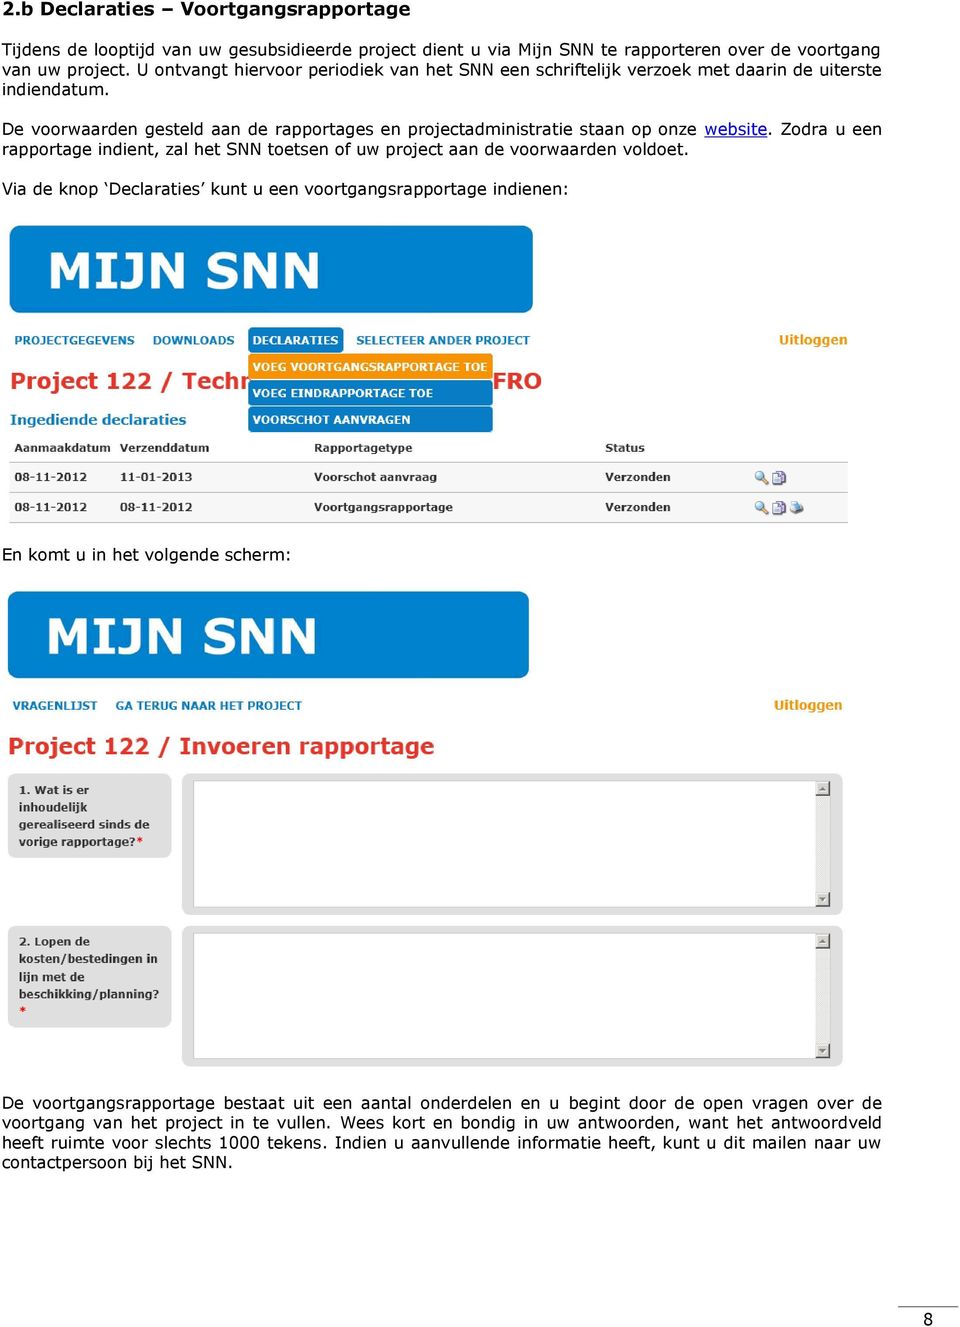 Zodra u een rapportage indient, zal het SNN toetsen of uw project aan de voorwaarden voldoet.